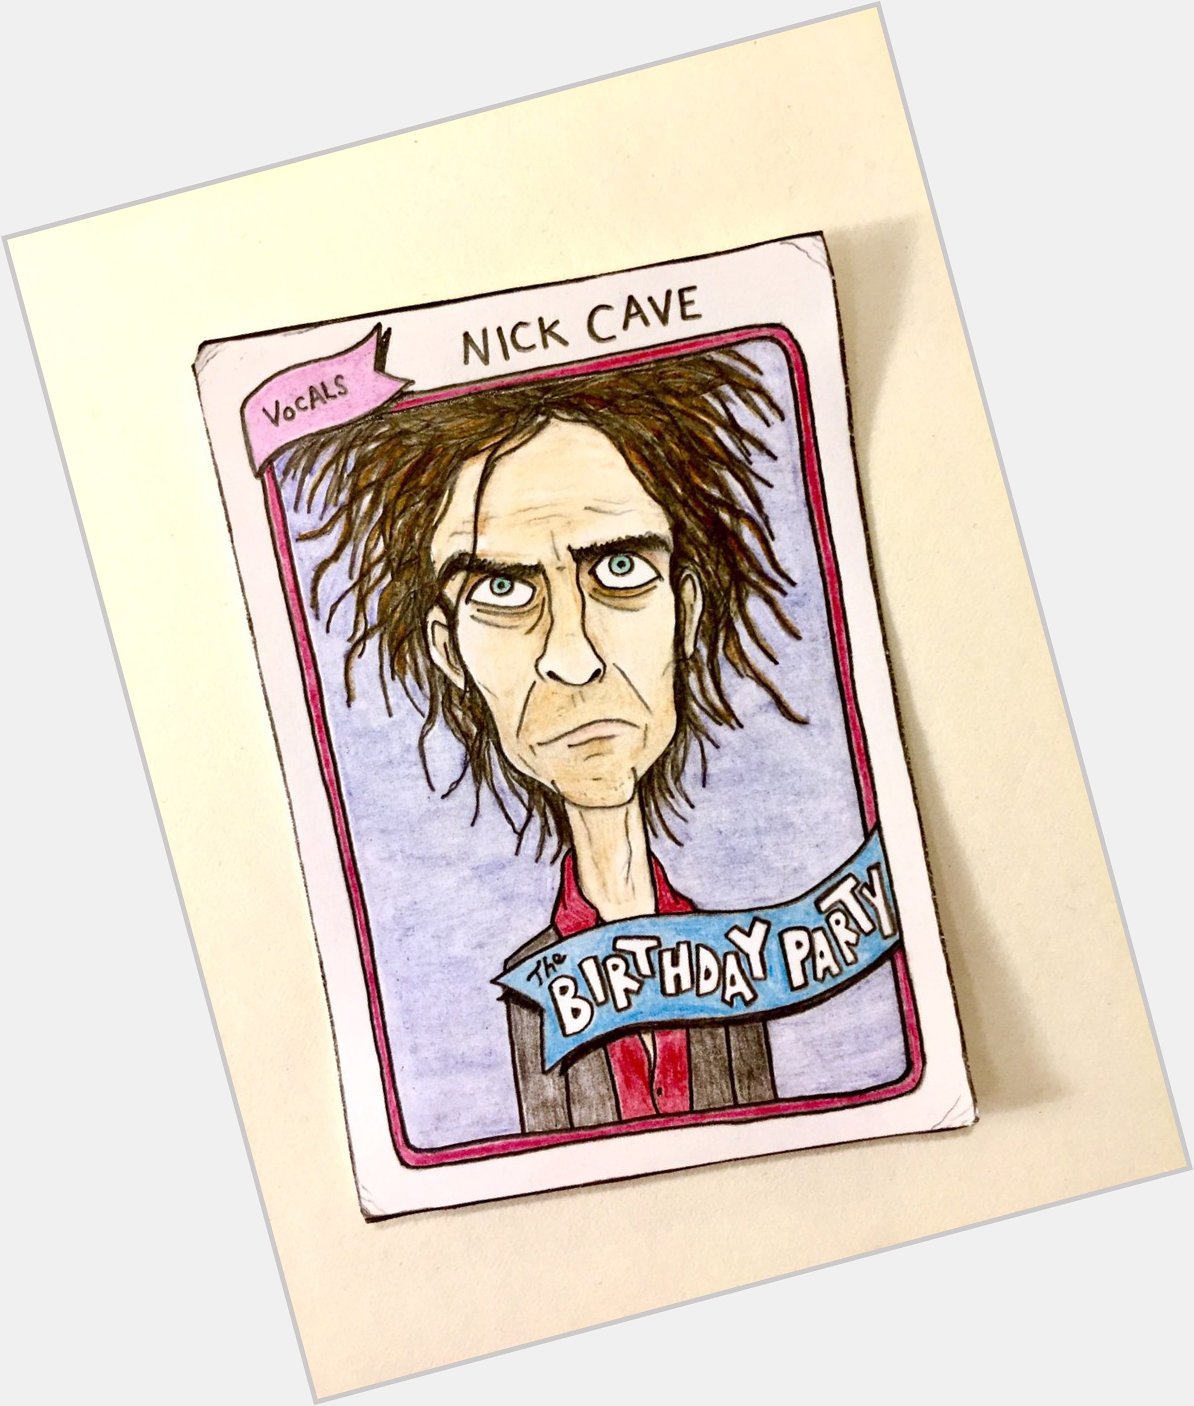 Happy birthday, Nick Cave! 